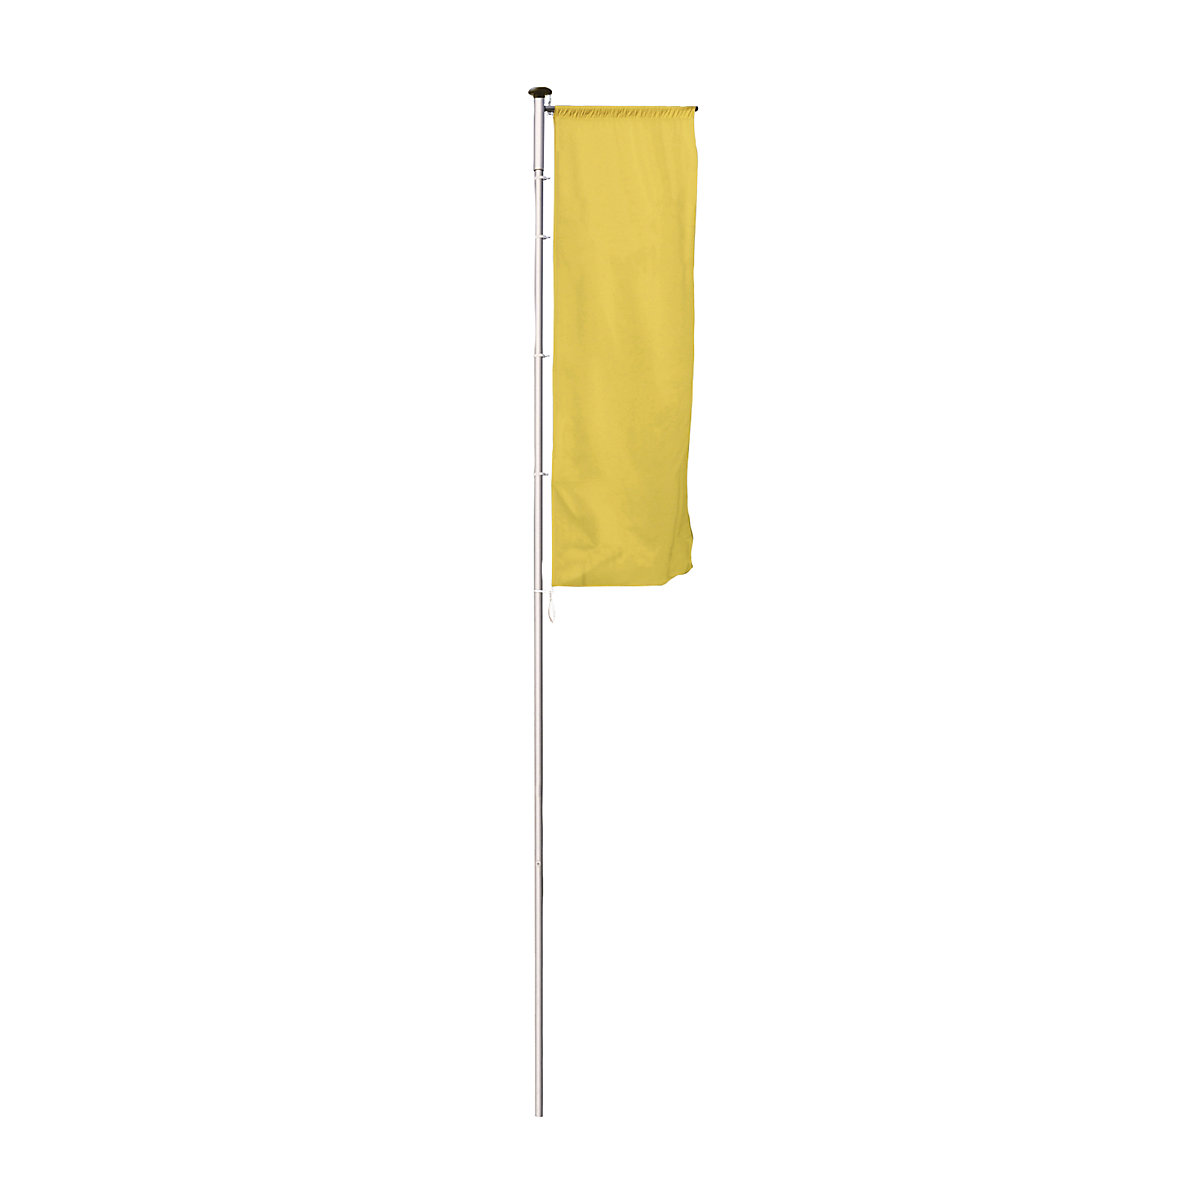 Pennone per bandiere in alluminio PIRAT – Mannus